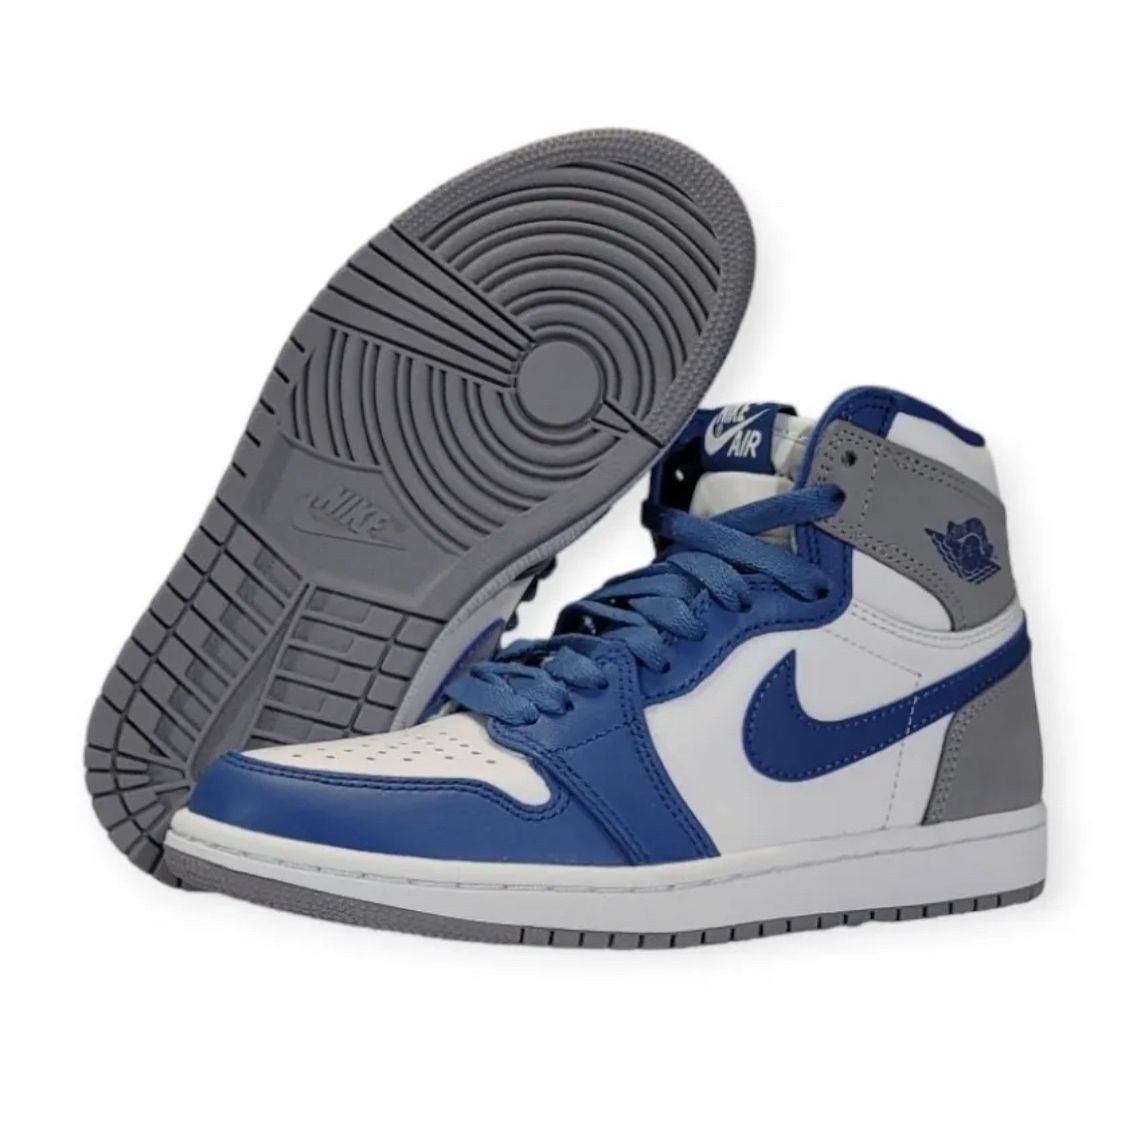 Nike Air Jordan 1 Retro High Size 4 / 5.5 Womens OG True Blue Shoes 